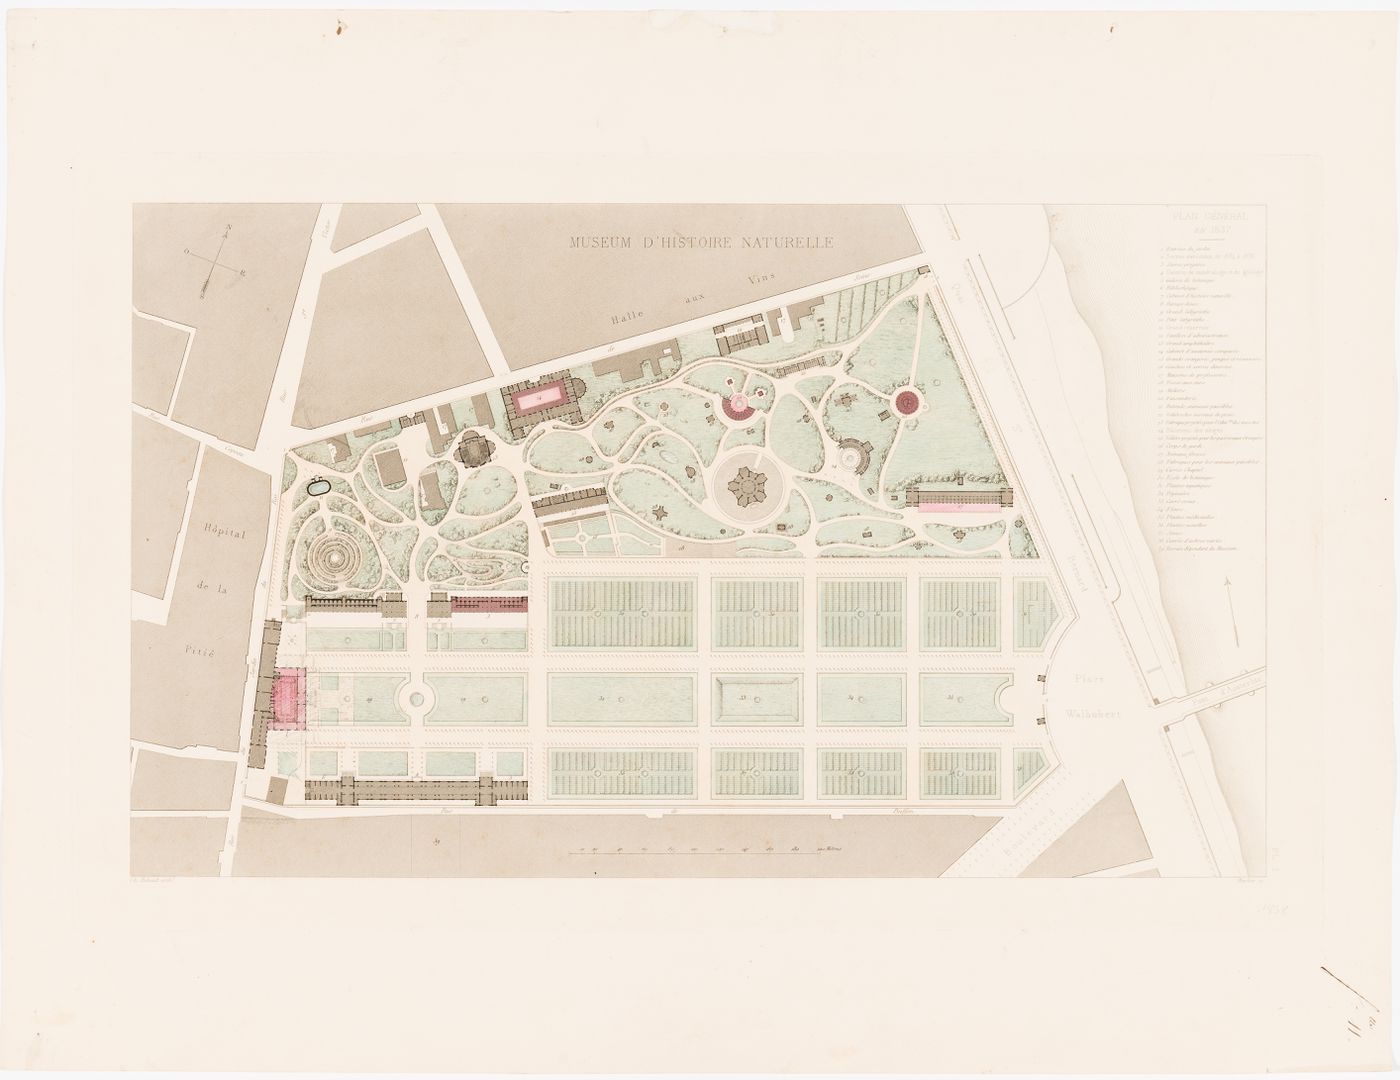 Site plan of the Muséum national d'histoire naturelle